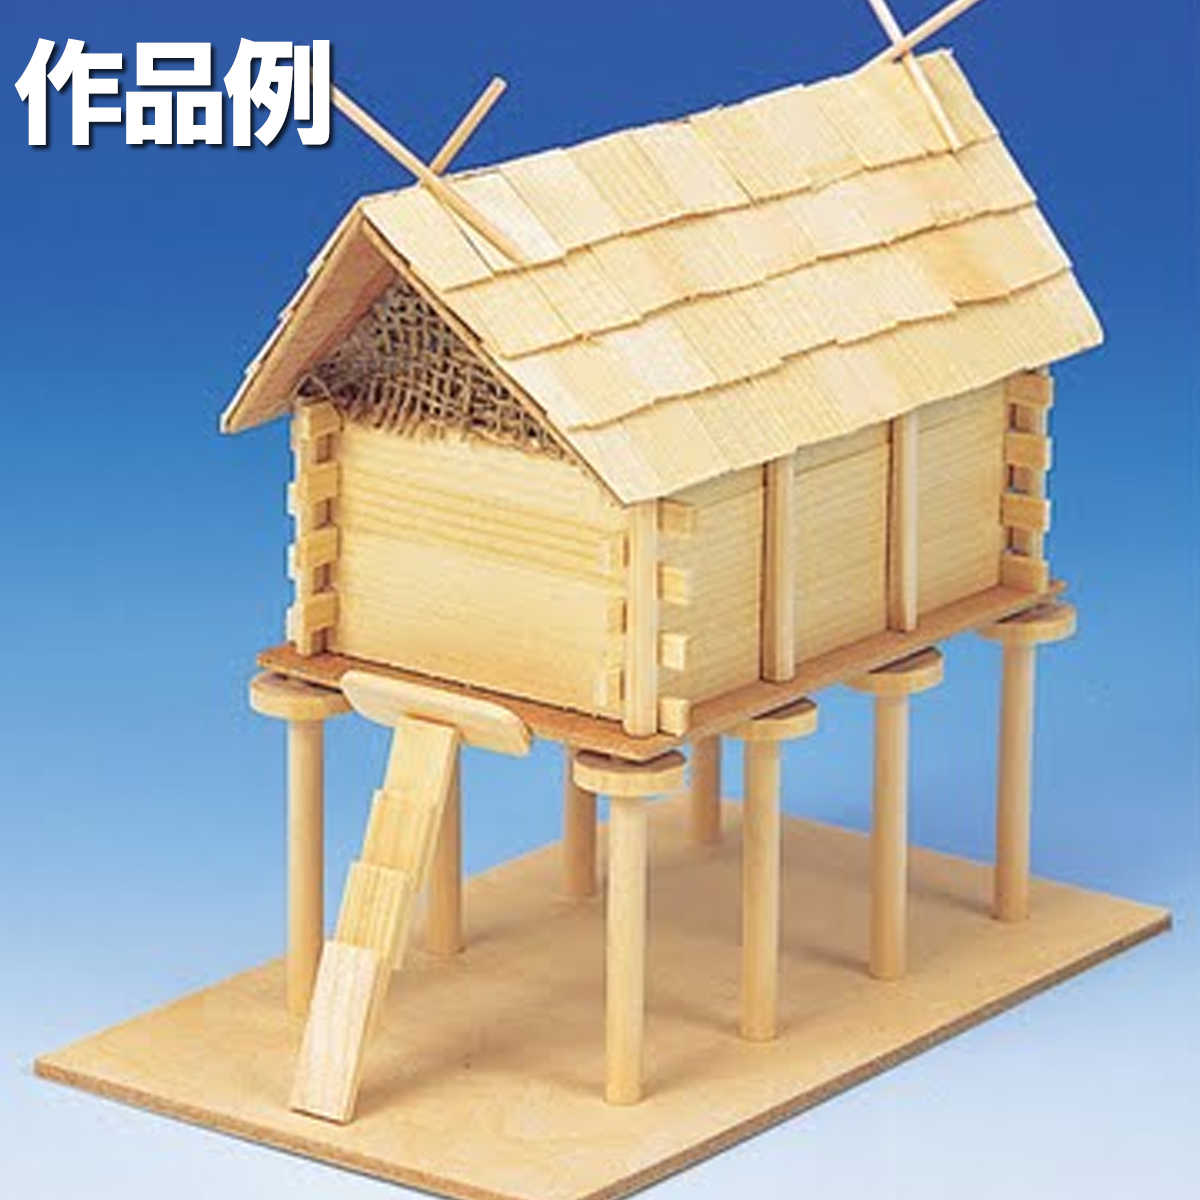 楽天市場 木工 工作キット 高床式倉 加賀谷木材 画材 ものづくりのアートロコ